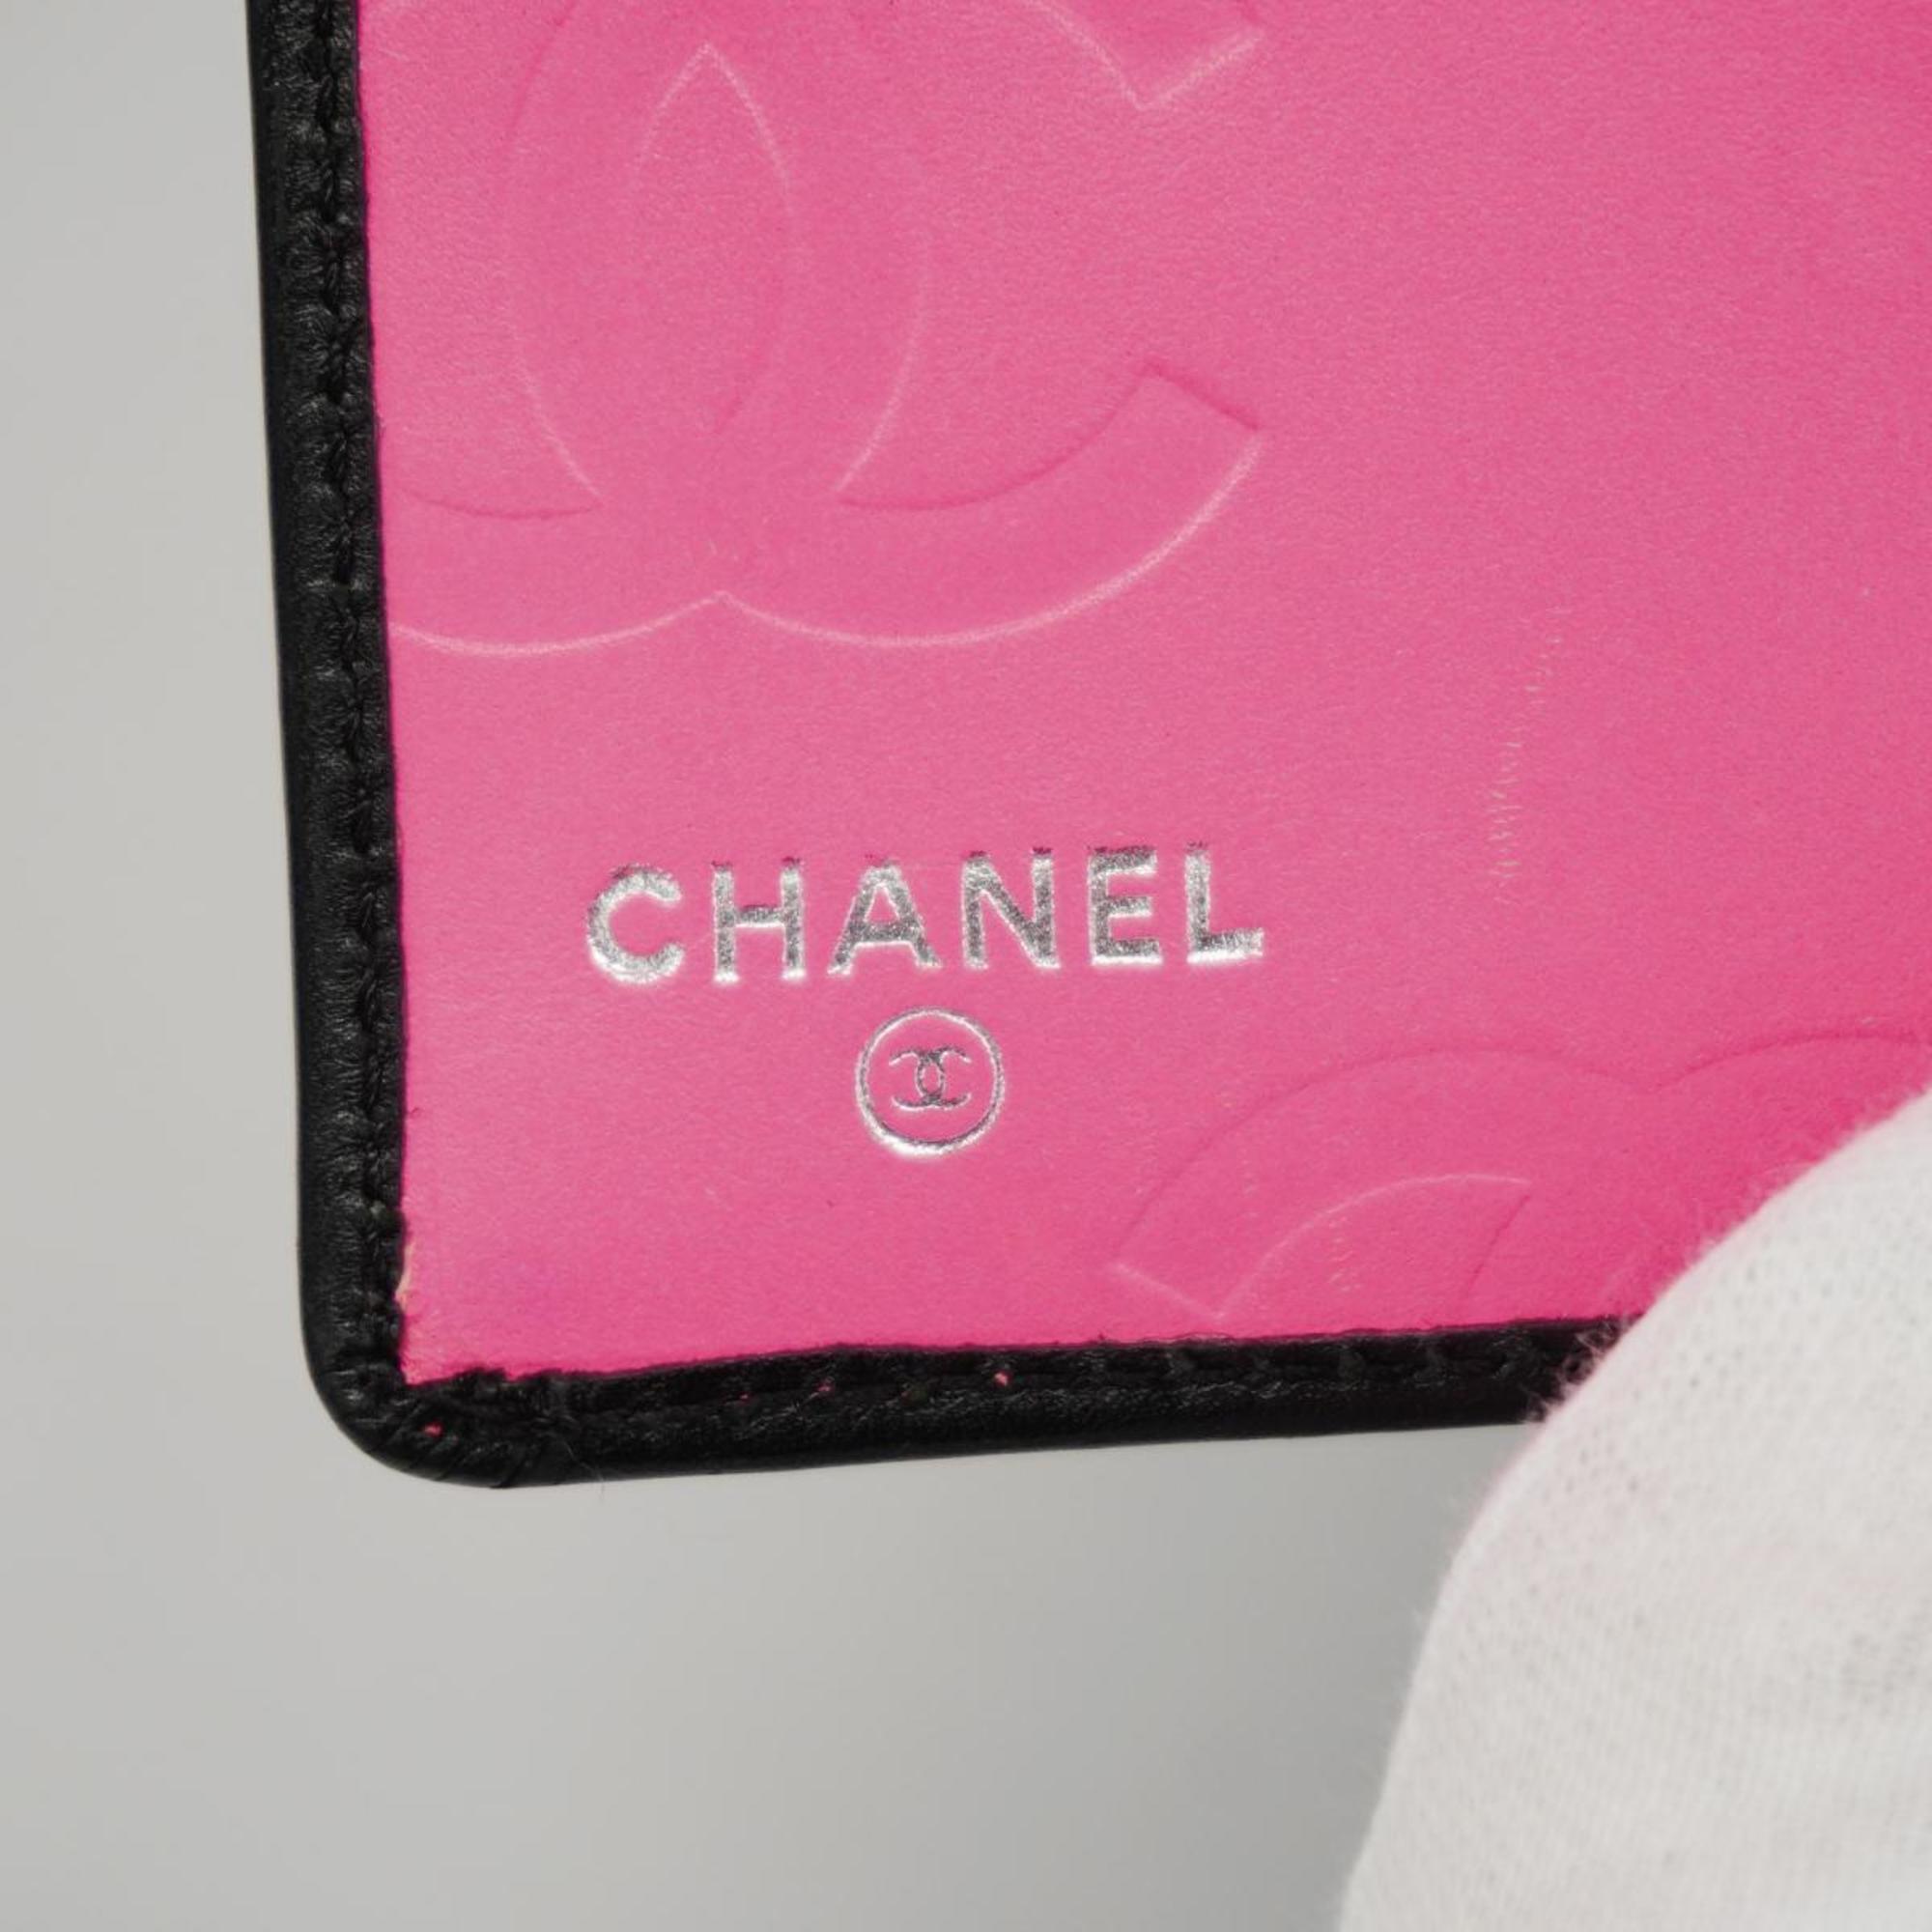 シャネル(Chanel) シャネル 長財布 カンボン ラムスキン ブラック ピンク   レディース